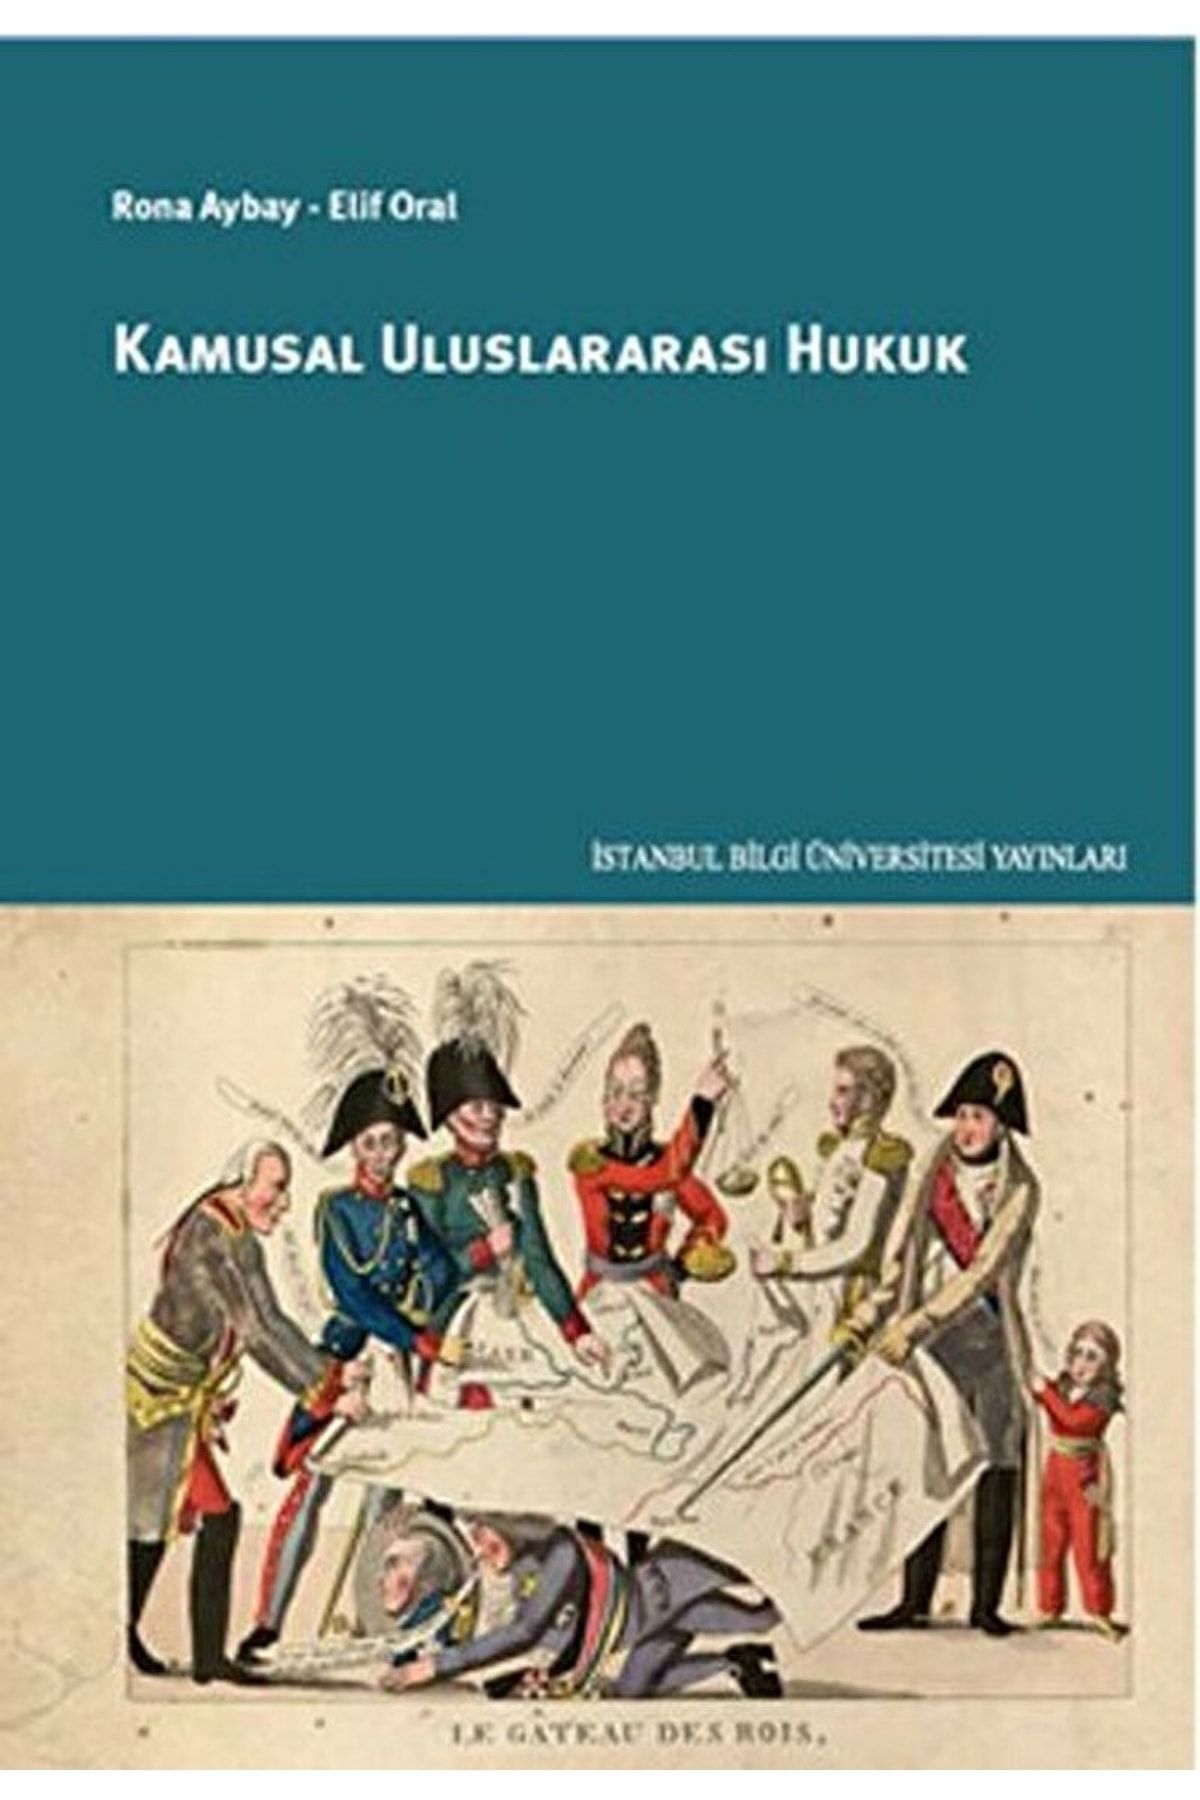 İstanbul Bilgi Üniversitesi Yayınları Kamusal Uluslararası Hukuk / Elif Oral / / 9786053994541